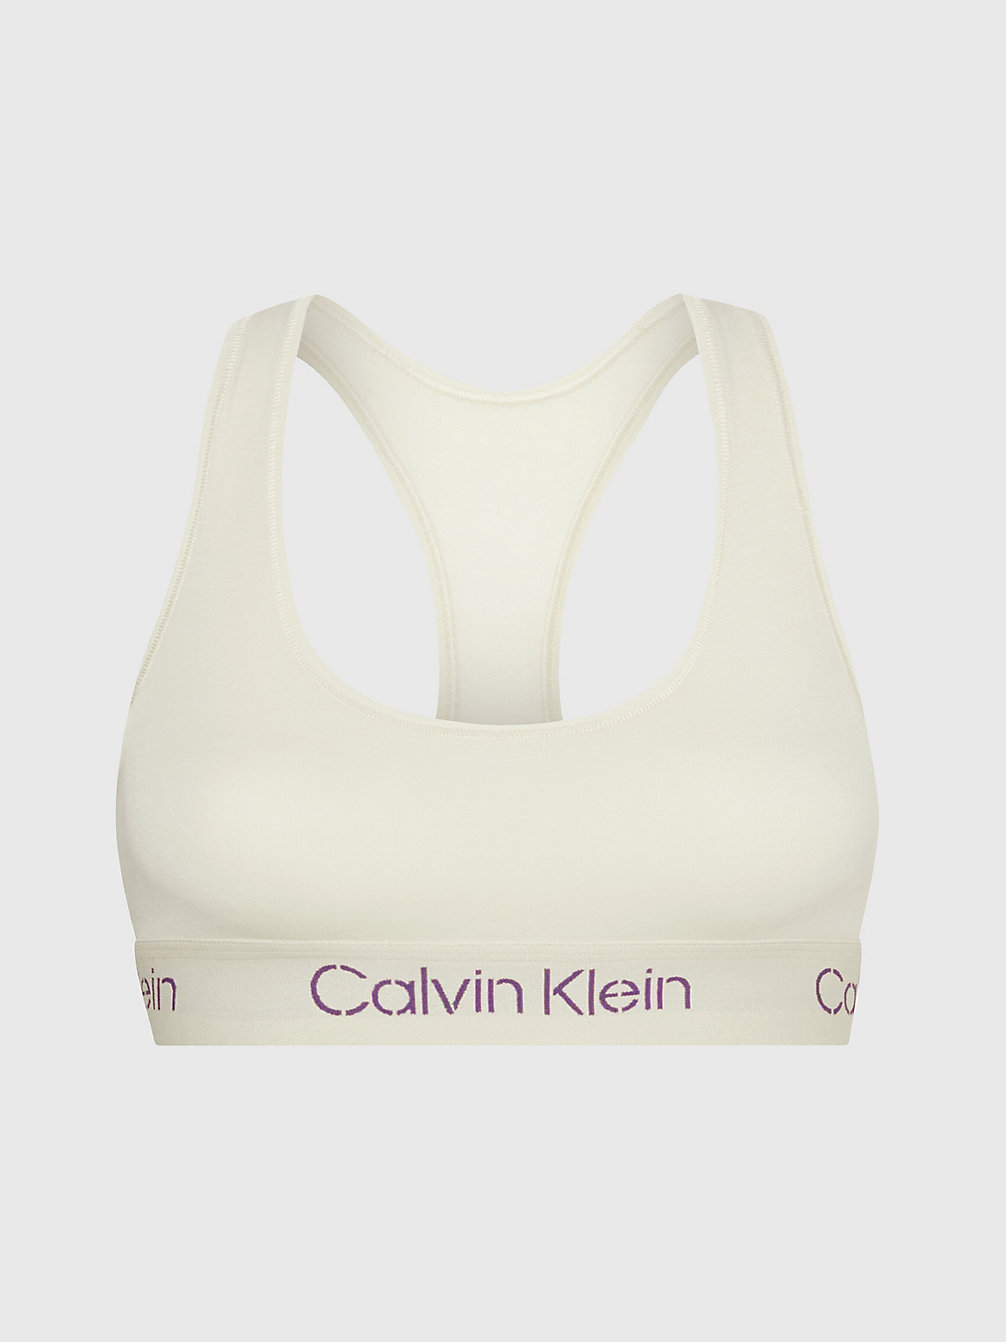 BONE WHITE/SUNSET PURPLE LOGO Bralette - Modern Cotton undefined dames Calvin Klein